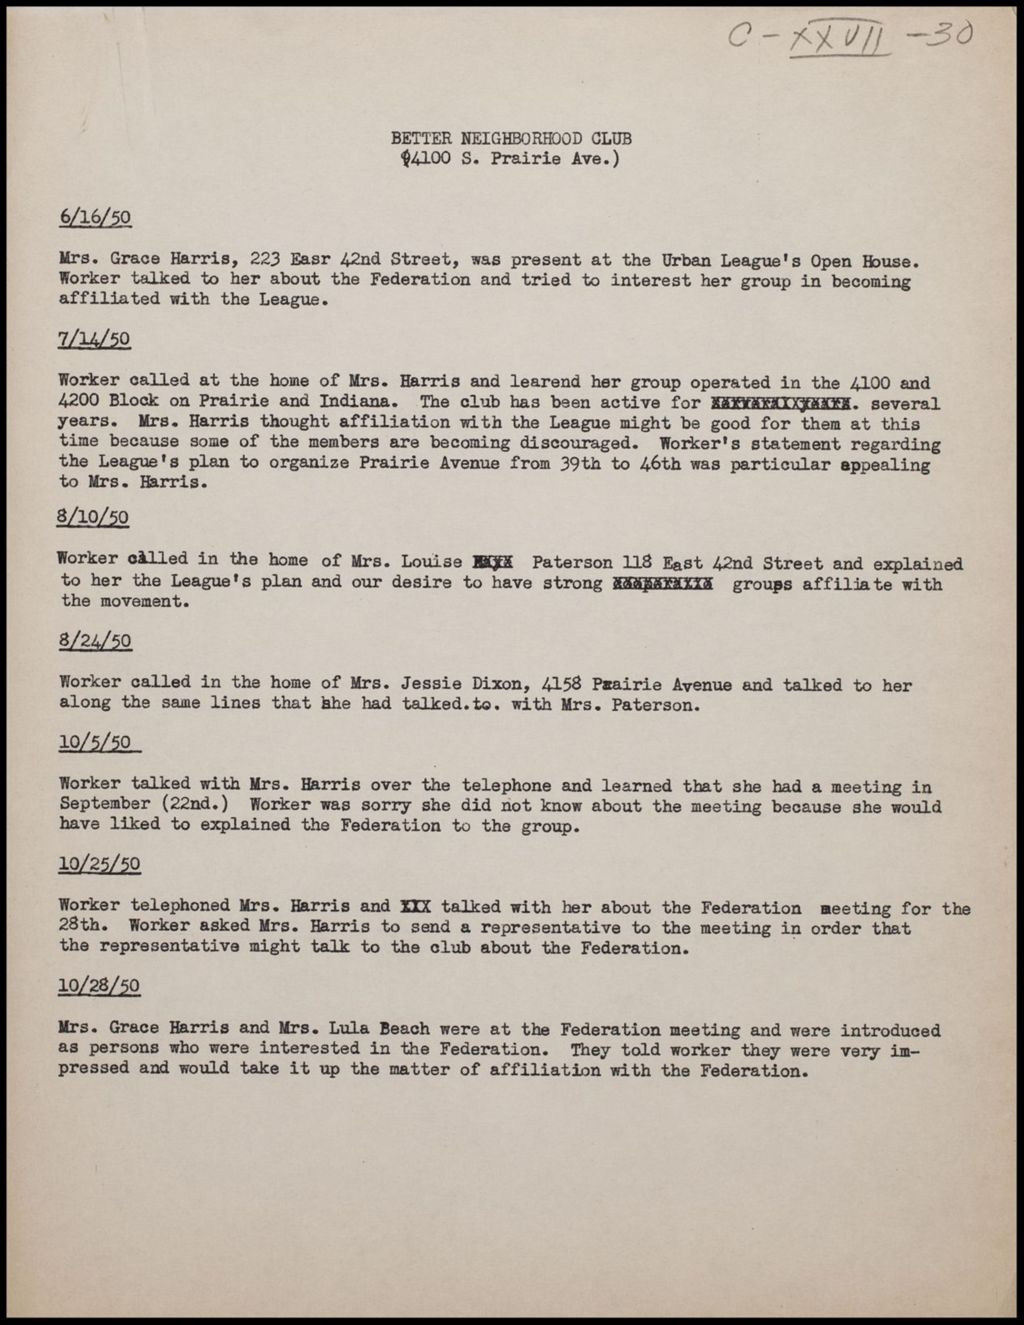 Block Club Reports - Parker Council, 1950-1954 (Folder II-2300)